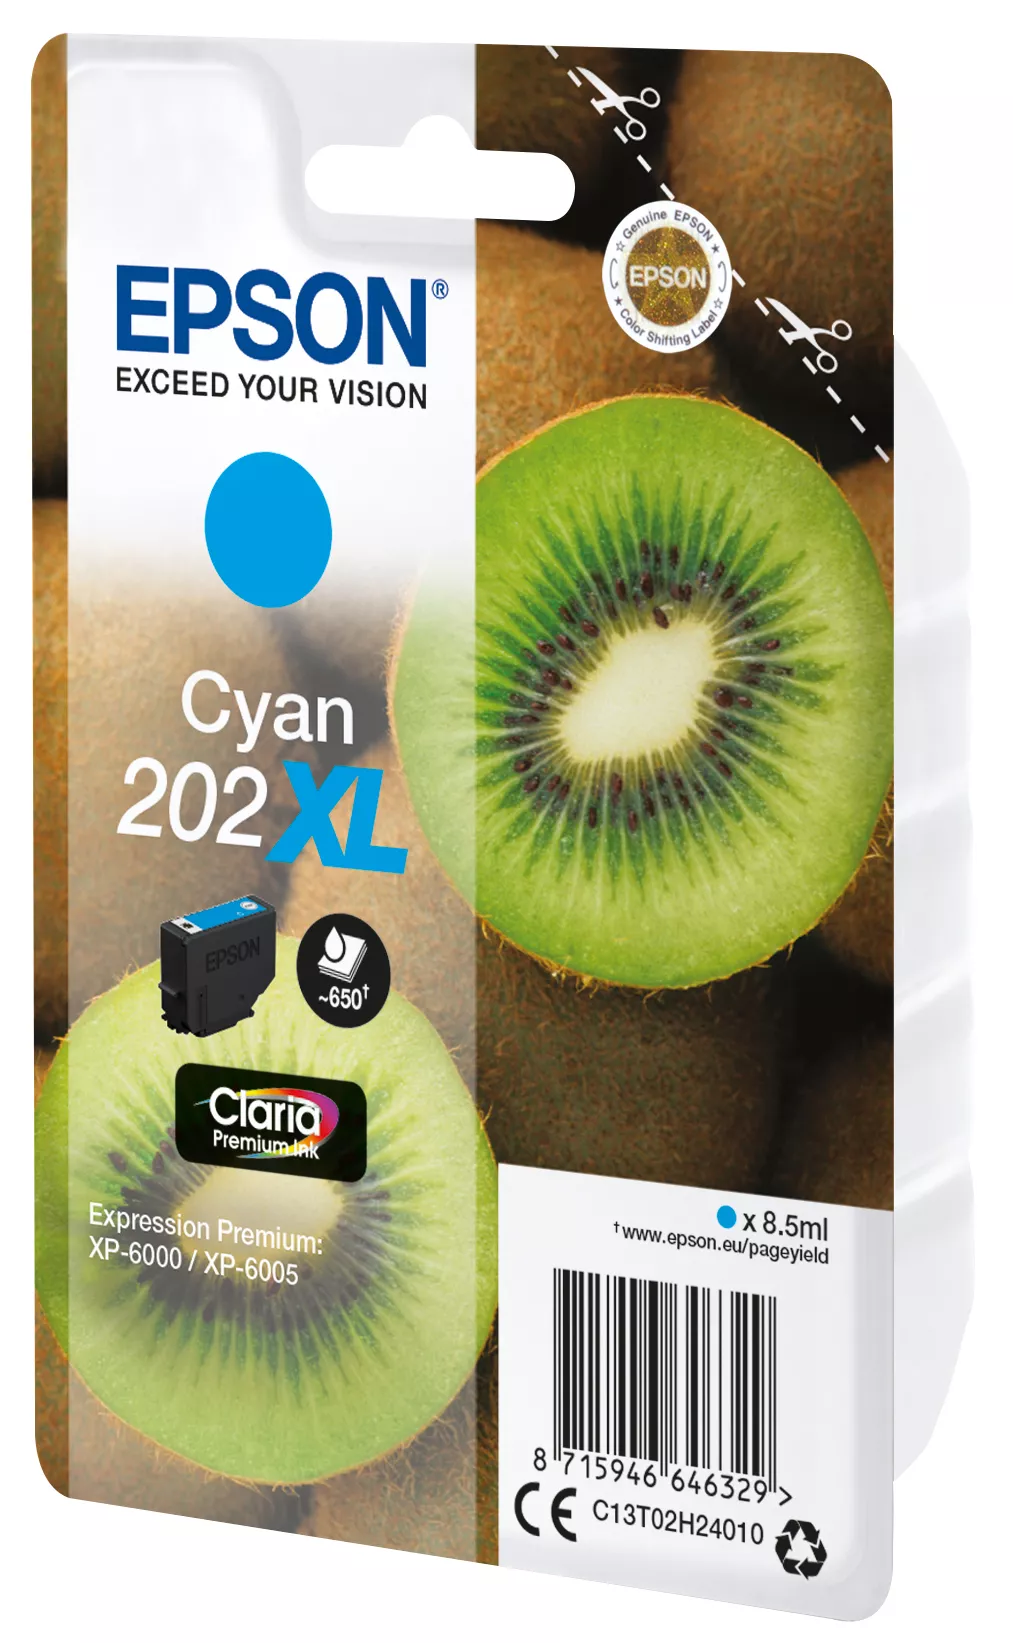 Achat EPSON Encre Claria Premium - Cartouche Kiwi 202 Cyan (XL et autres produits de la marque Epson